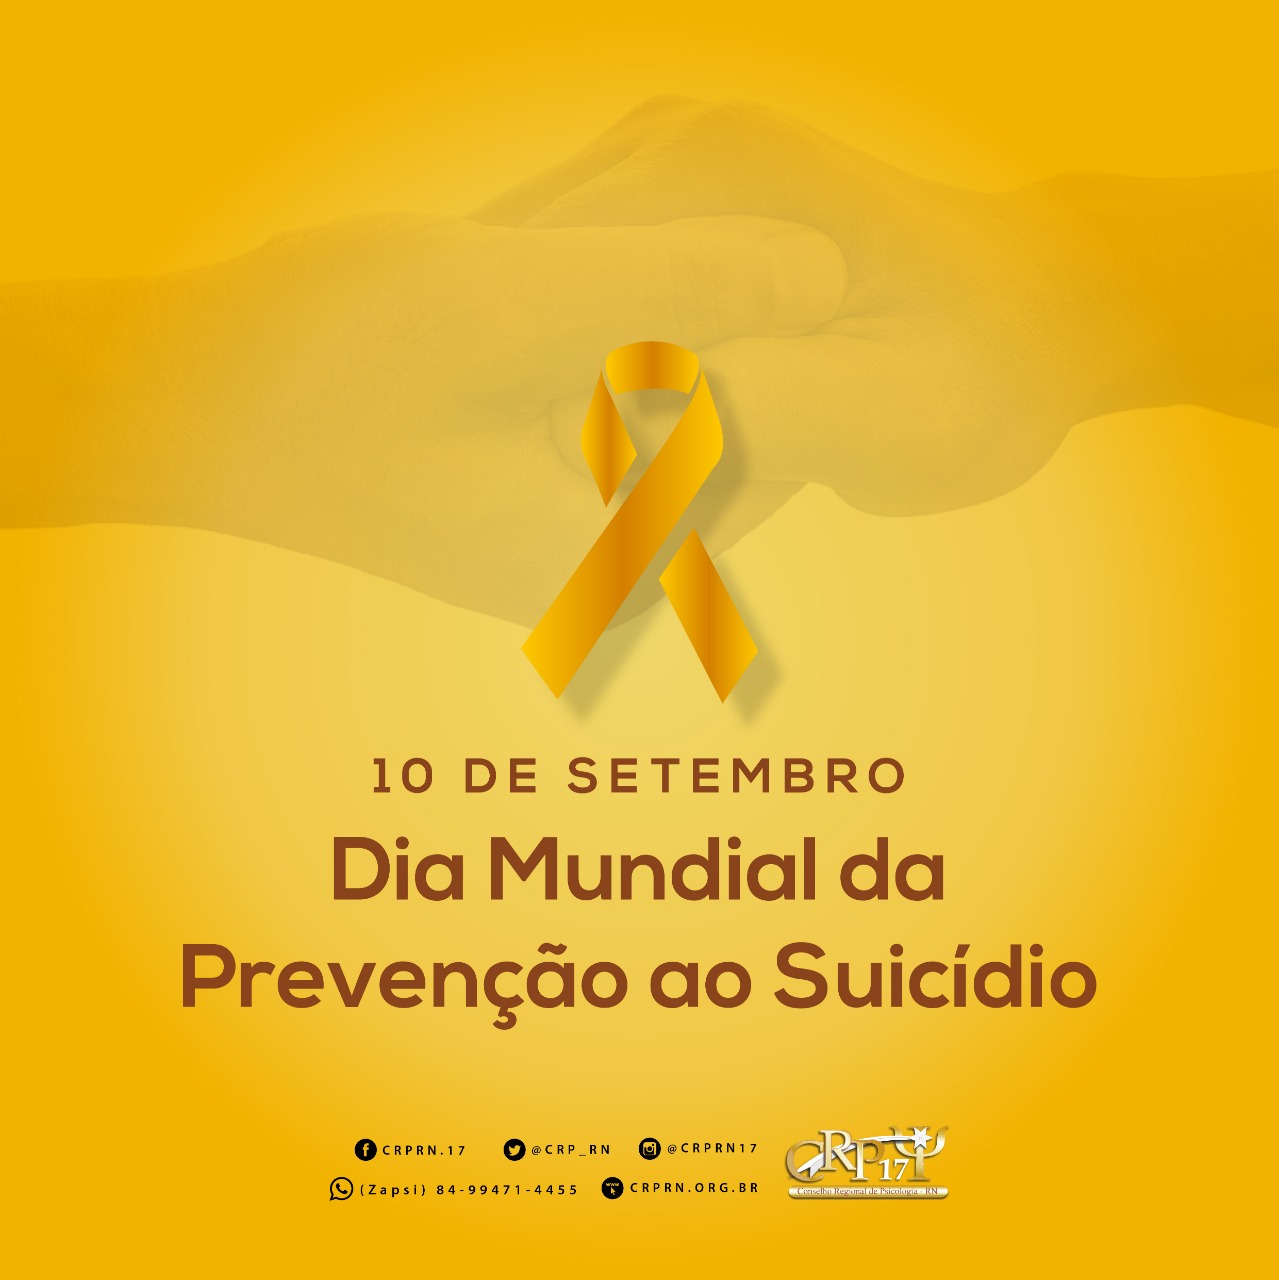 Dia Mundial da Prevenção ao Suicídio - 10 de Setembro